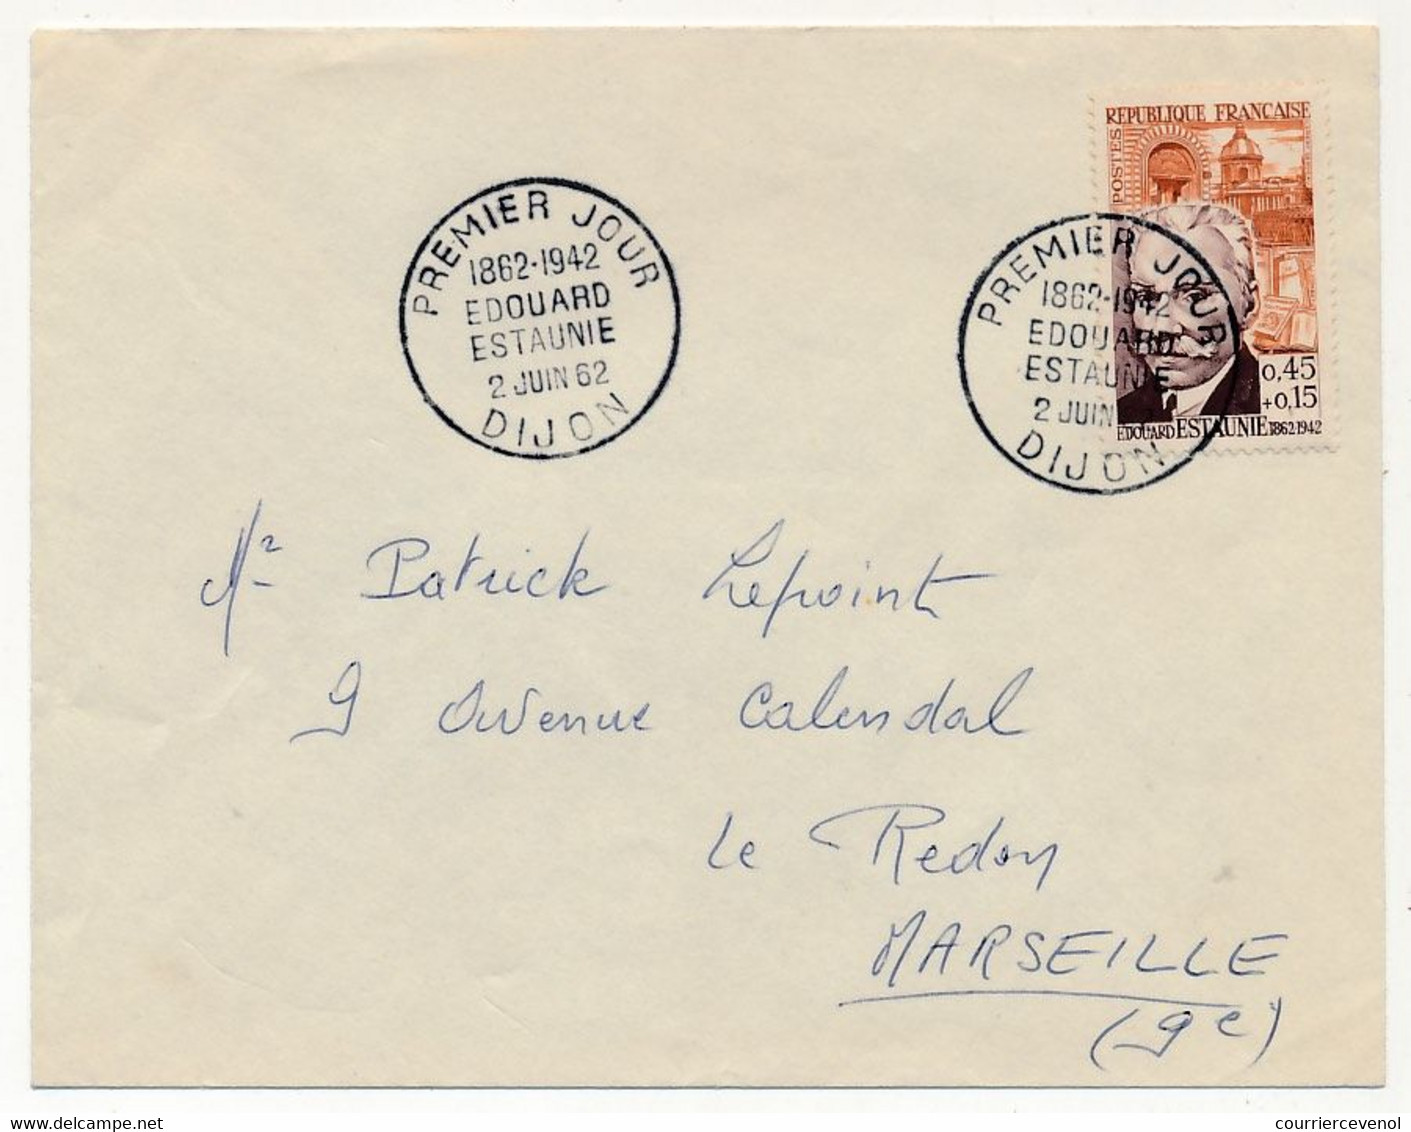 FRANCE - Env. Affr 0,45 + 0,15 Edouard Estaunié - Obl Premier Jour - DIJON - 2 Juin 1962 - Lettres & Documents